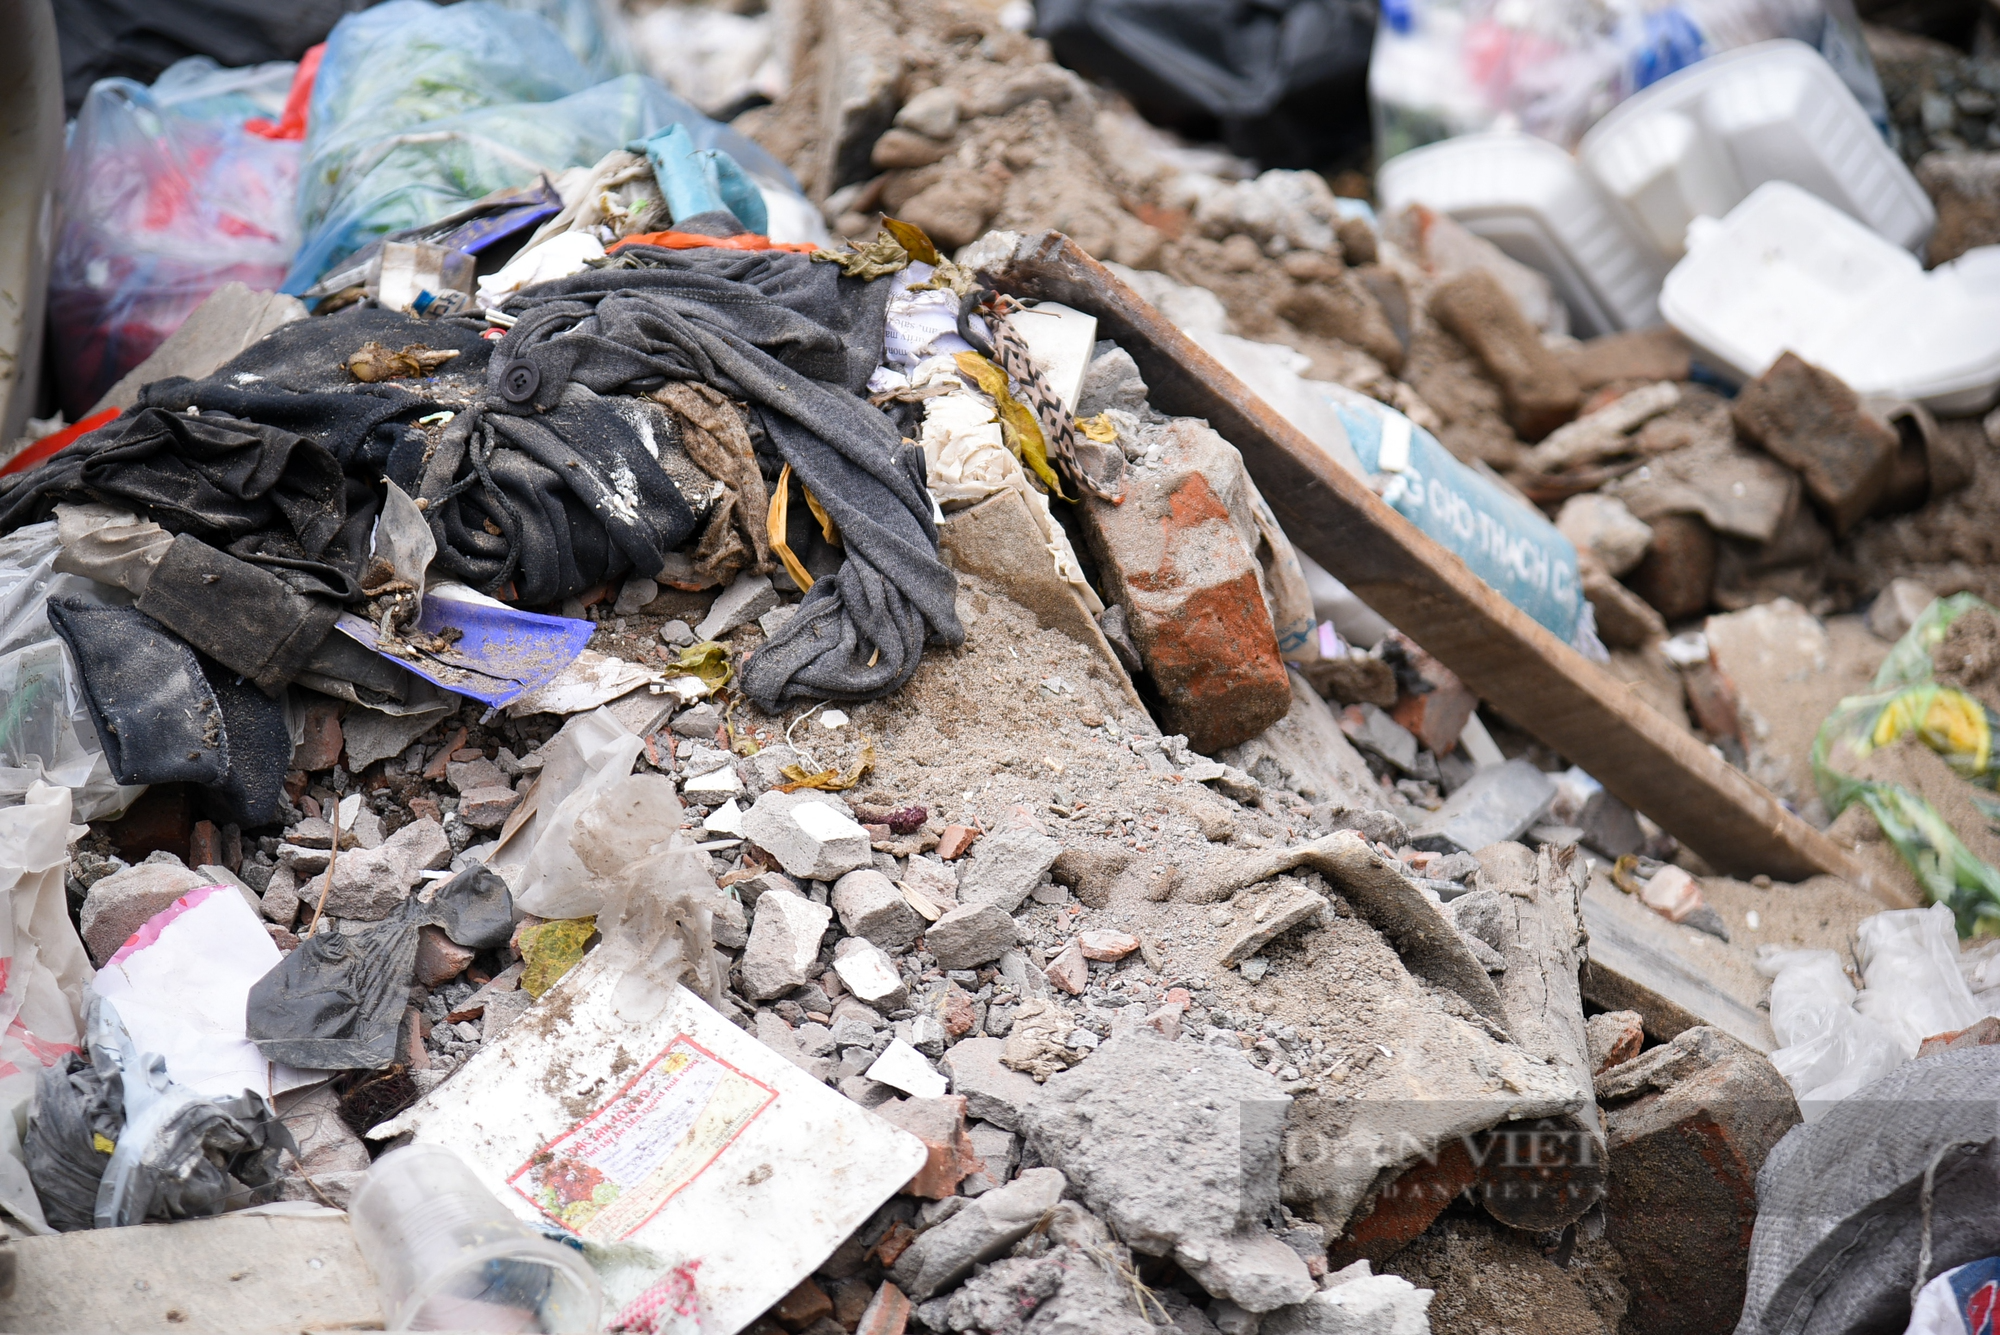 Ngang nhiên đổ rác thải xây dựng giữa ban ngày trong khu dân cư - Ảnh 7.